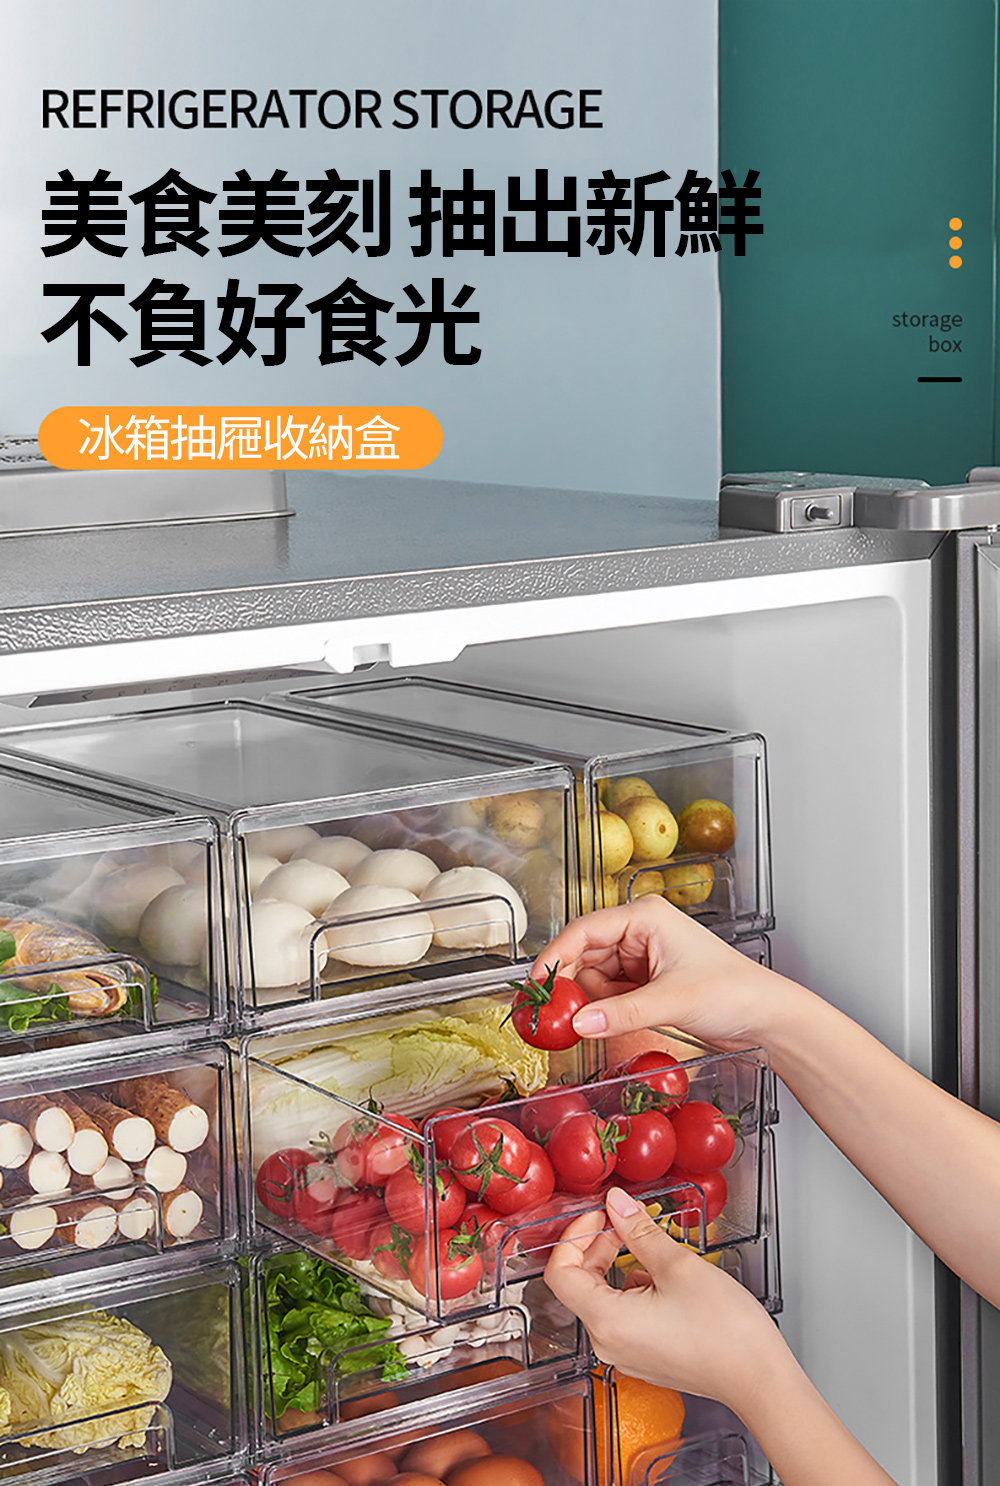 茉家 日式高透可視冰箱抽屜收納保鮮盒(中號6入) 推薦